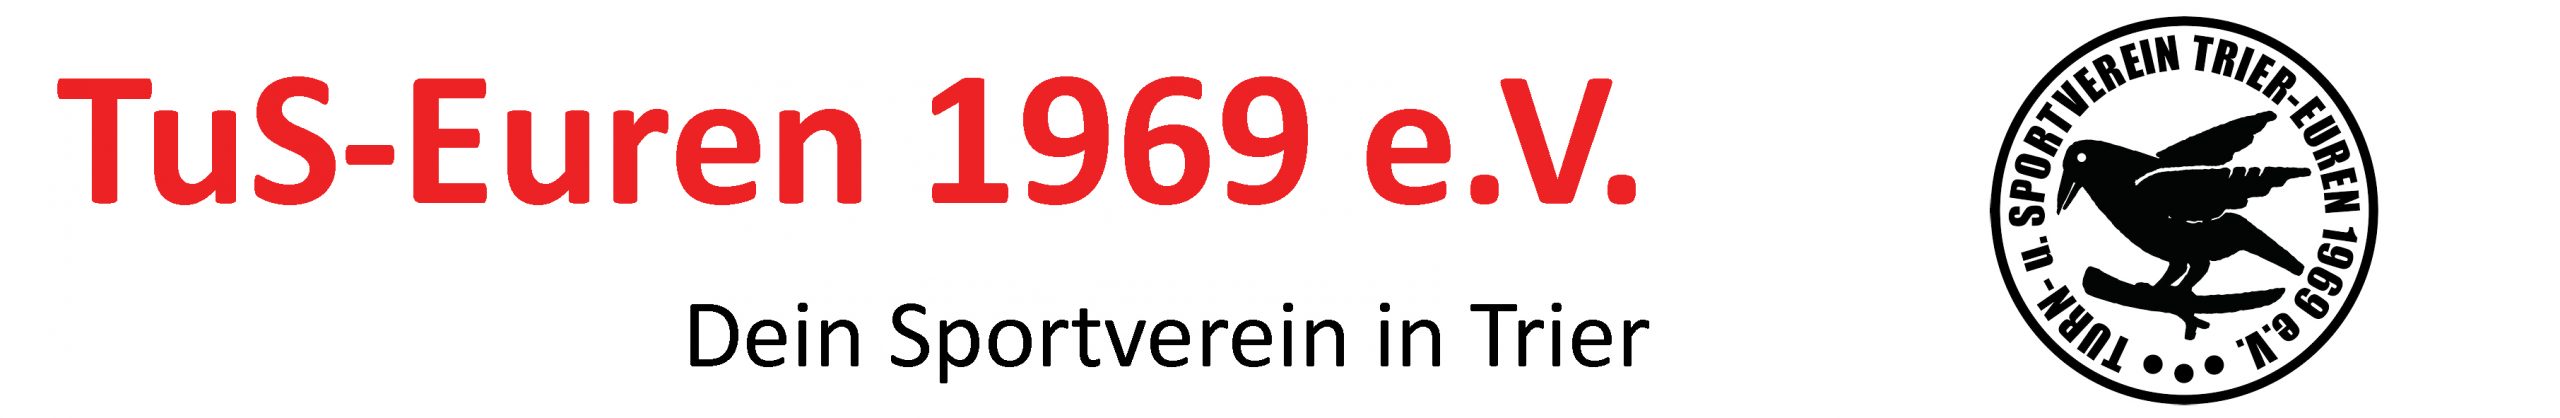 Turn- und Sportverein Trier-Euren 1969 e.V.